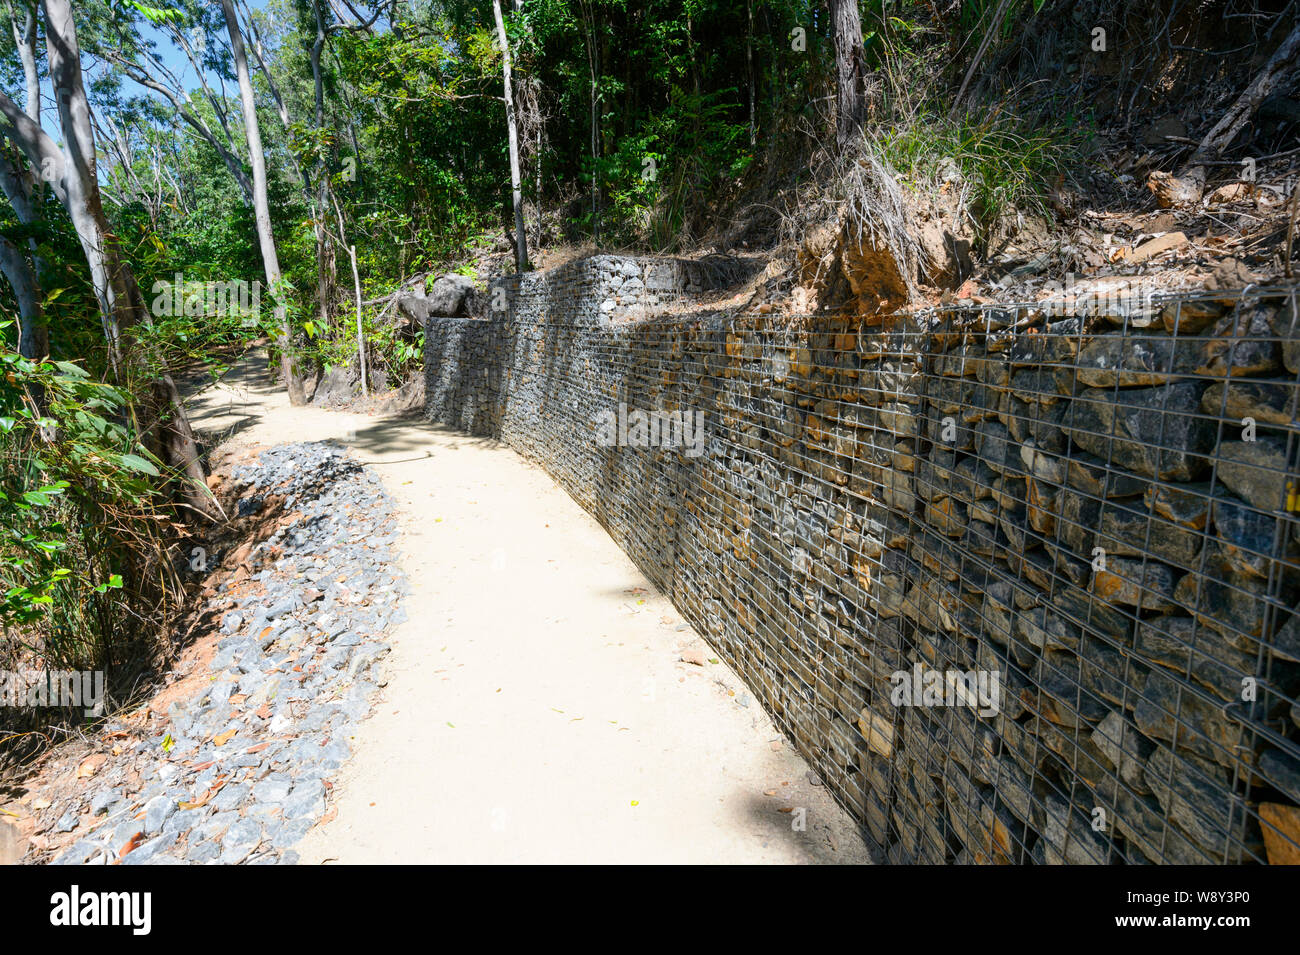 Un mur de rétention en pierre le long d'un sentier est une protection contre les glissements de terrain, Port Douglas, Far North Queensland, Queensland, Australie, FNQ Banque D'Images